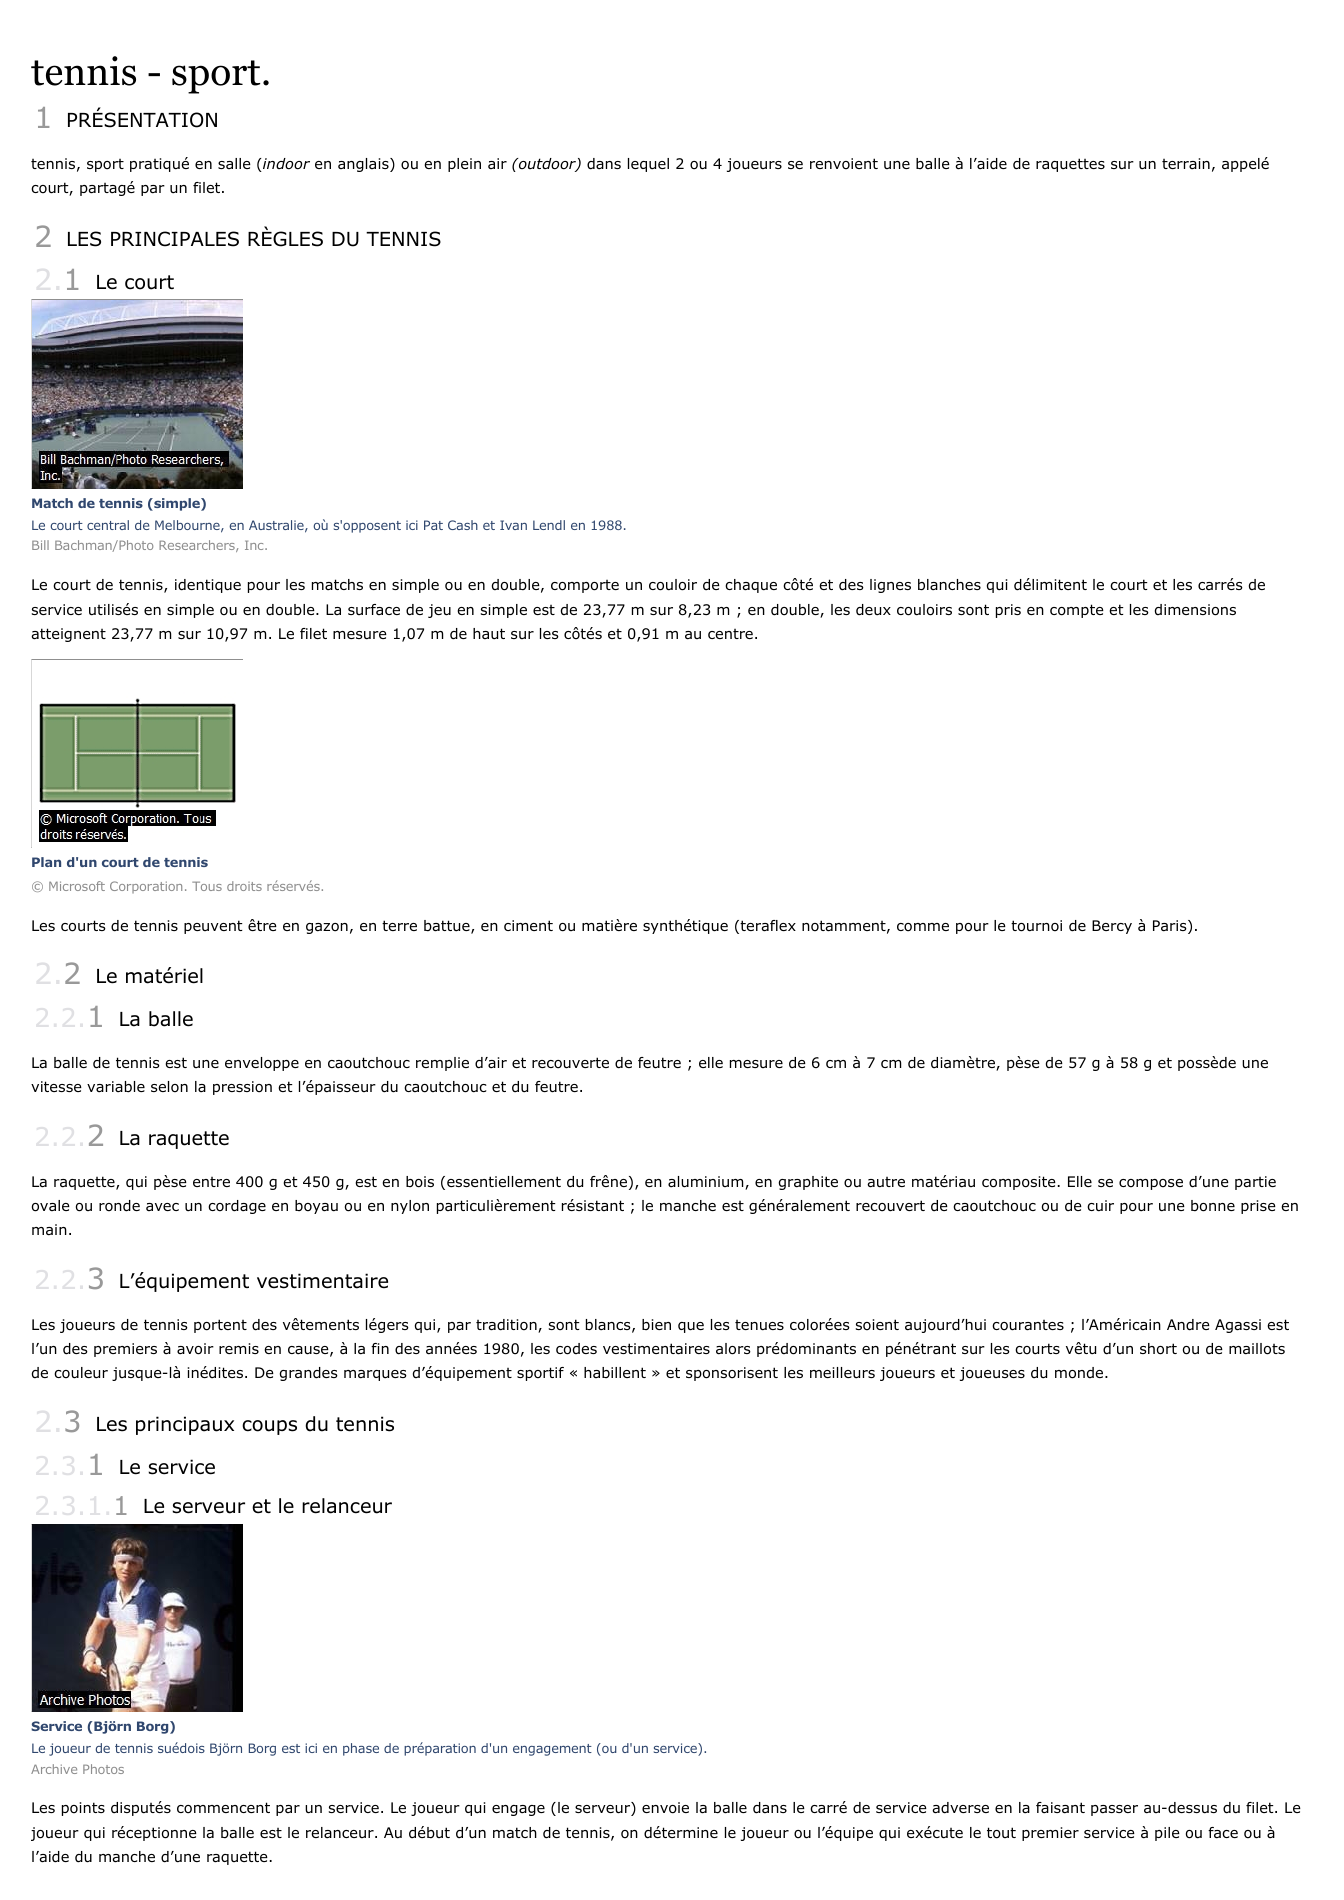 Prévisualisation du document tennis - sport.